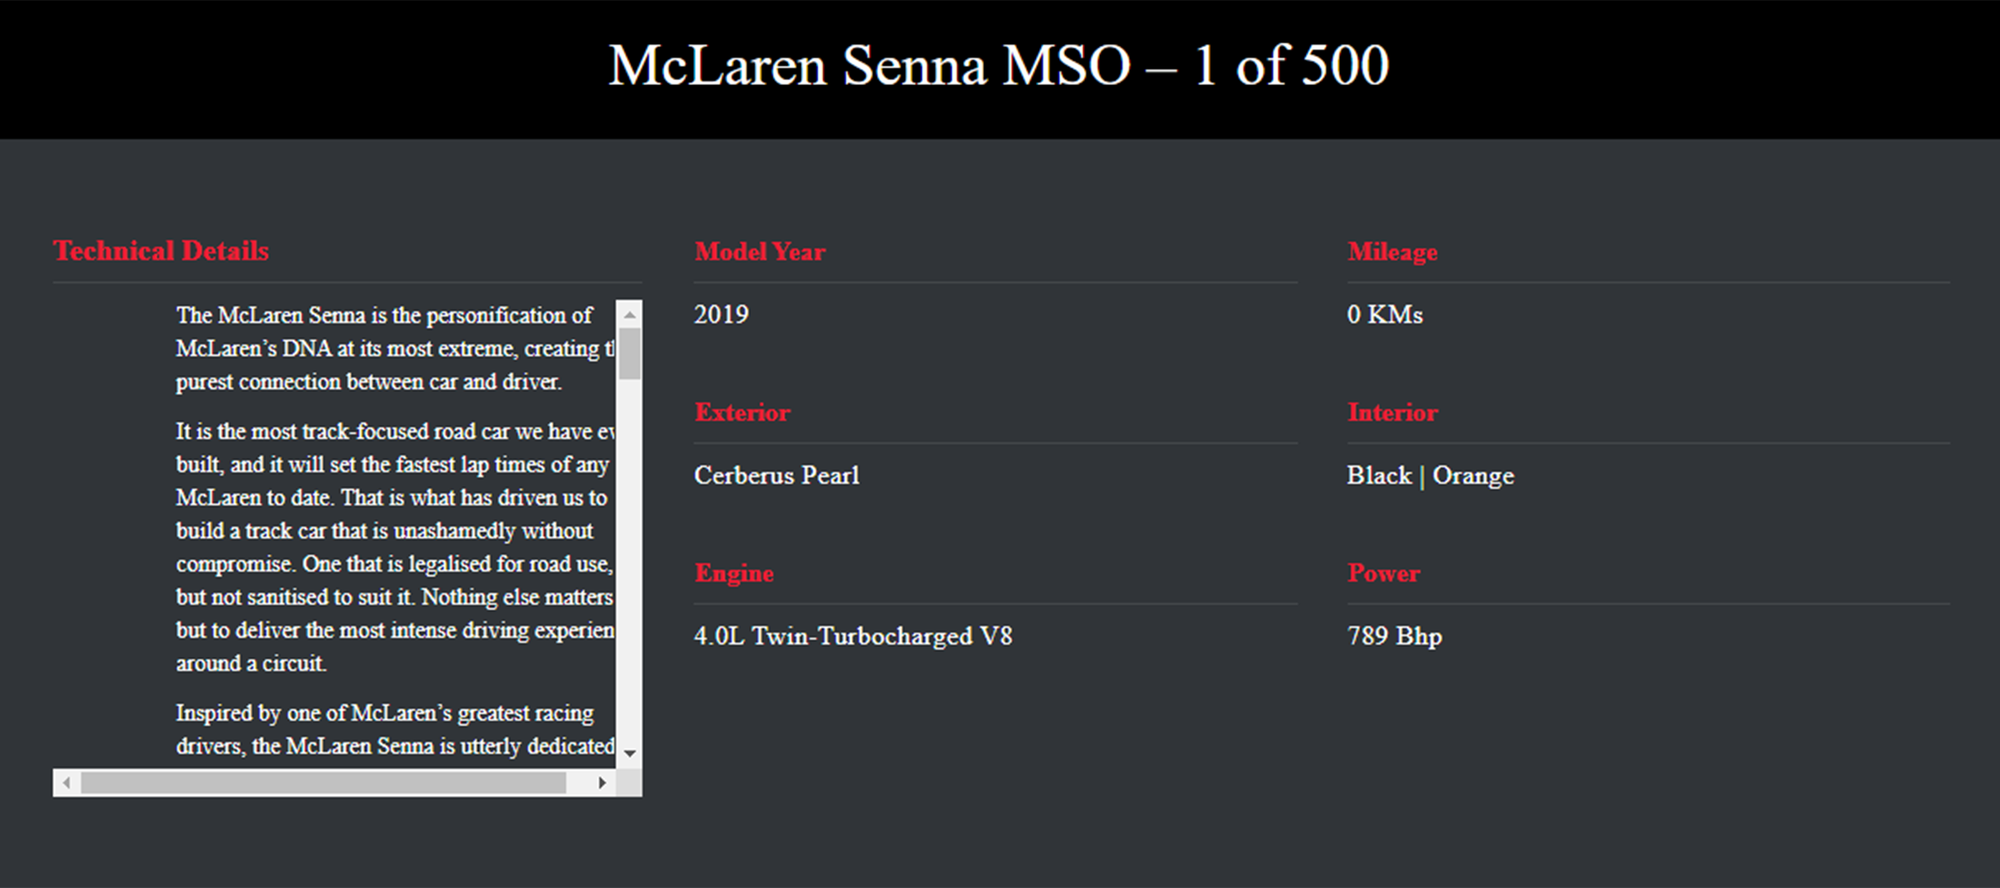 Đại gia Hoàng Kim Khánh đích thân mục sở thị McLaren Senna MSO tại Dubai: Xe chưa lăn bánh, sản xuất giới hạn, giá gần 2 triệu USD - Ảnh 2.